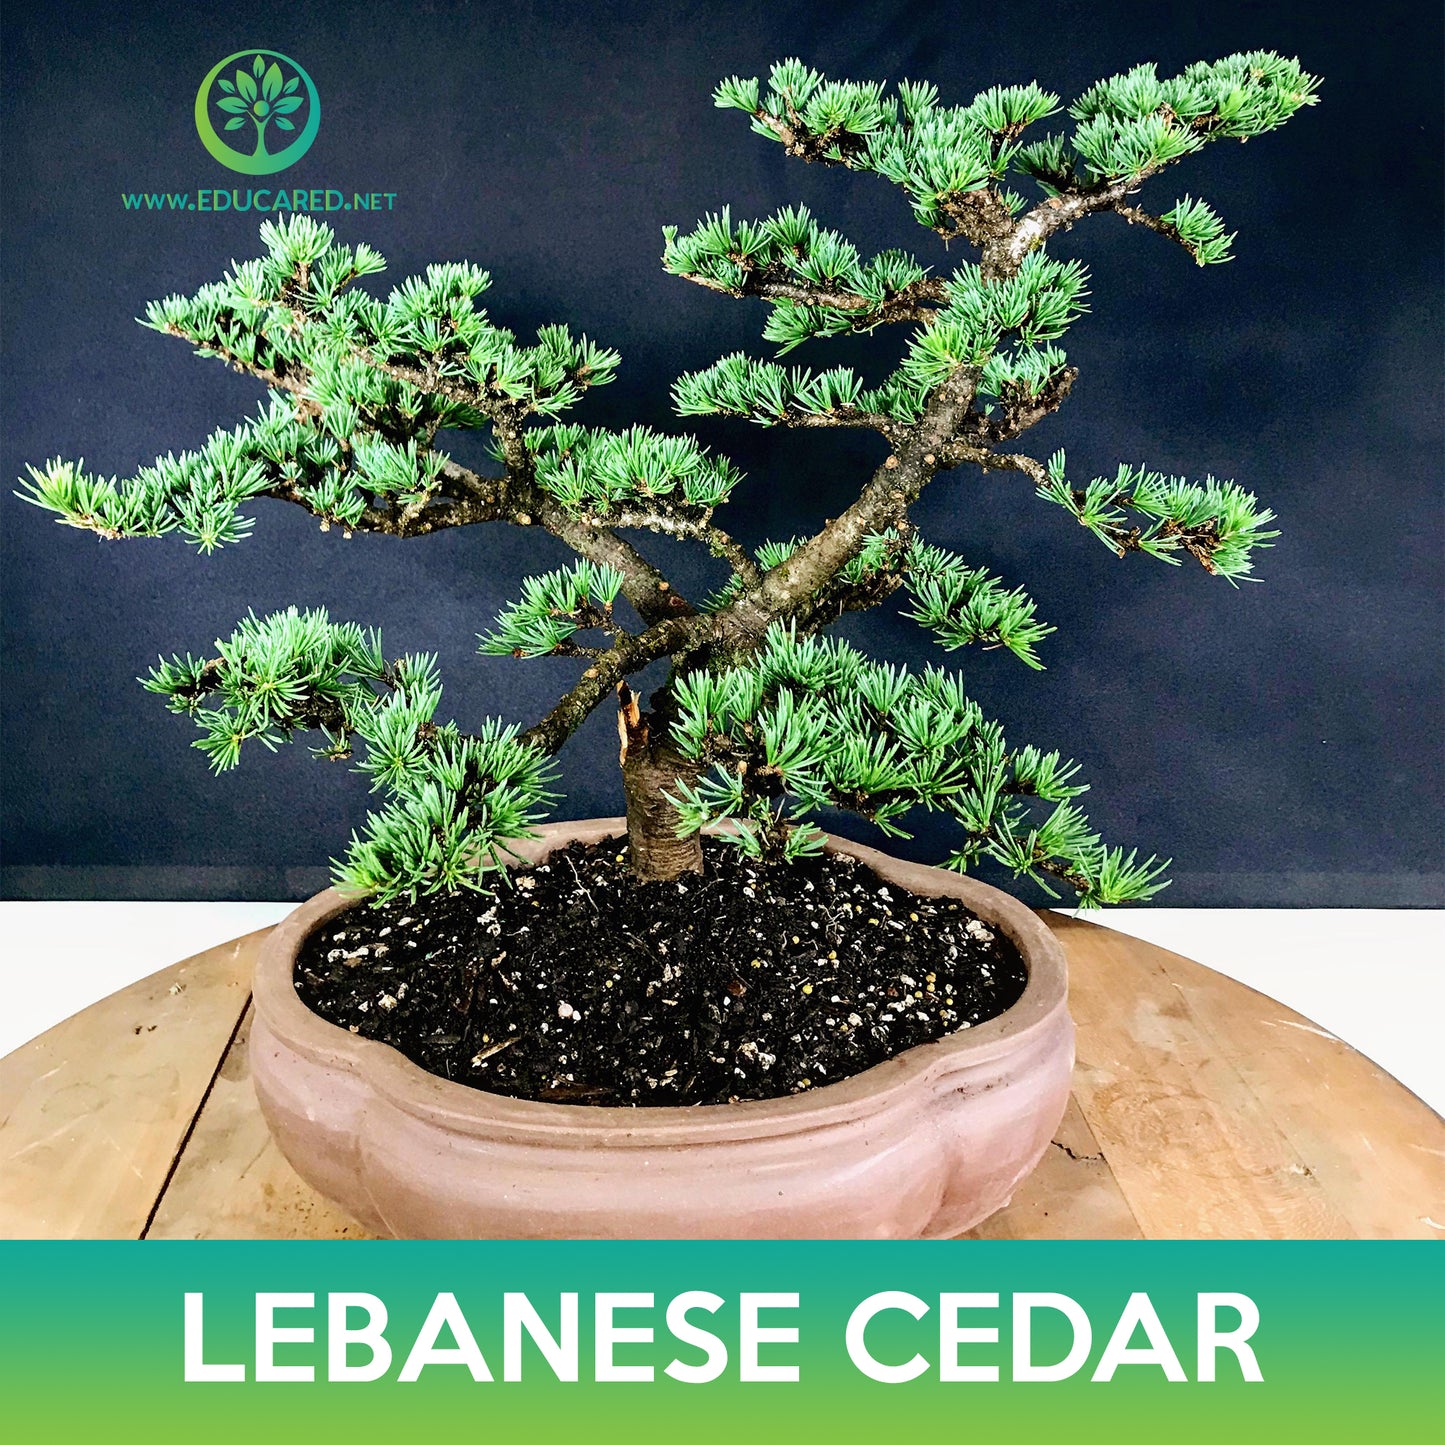 Lebanese Cedar Tree Seeds, Cedrus libani